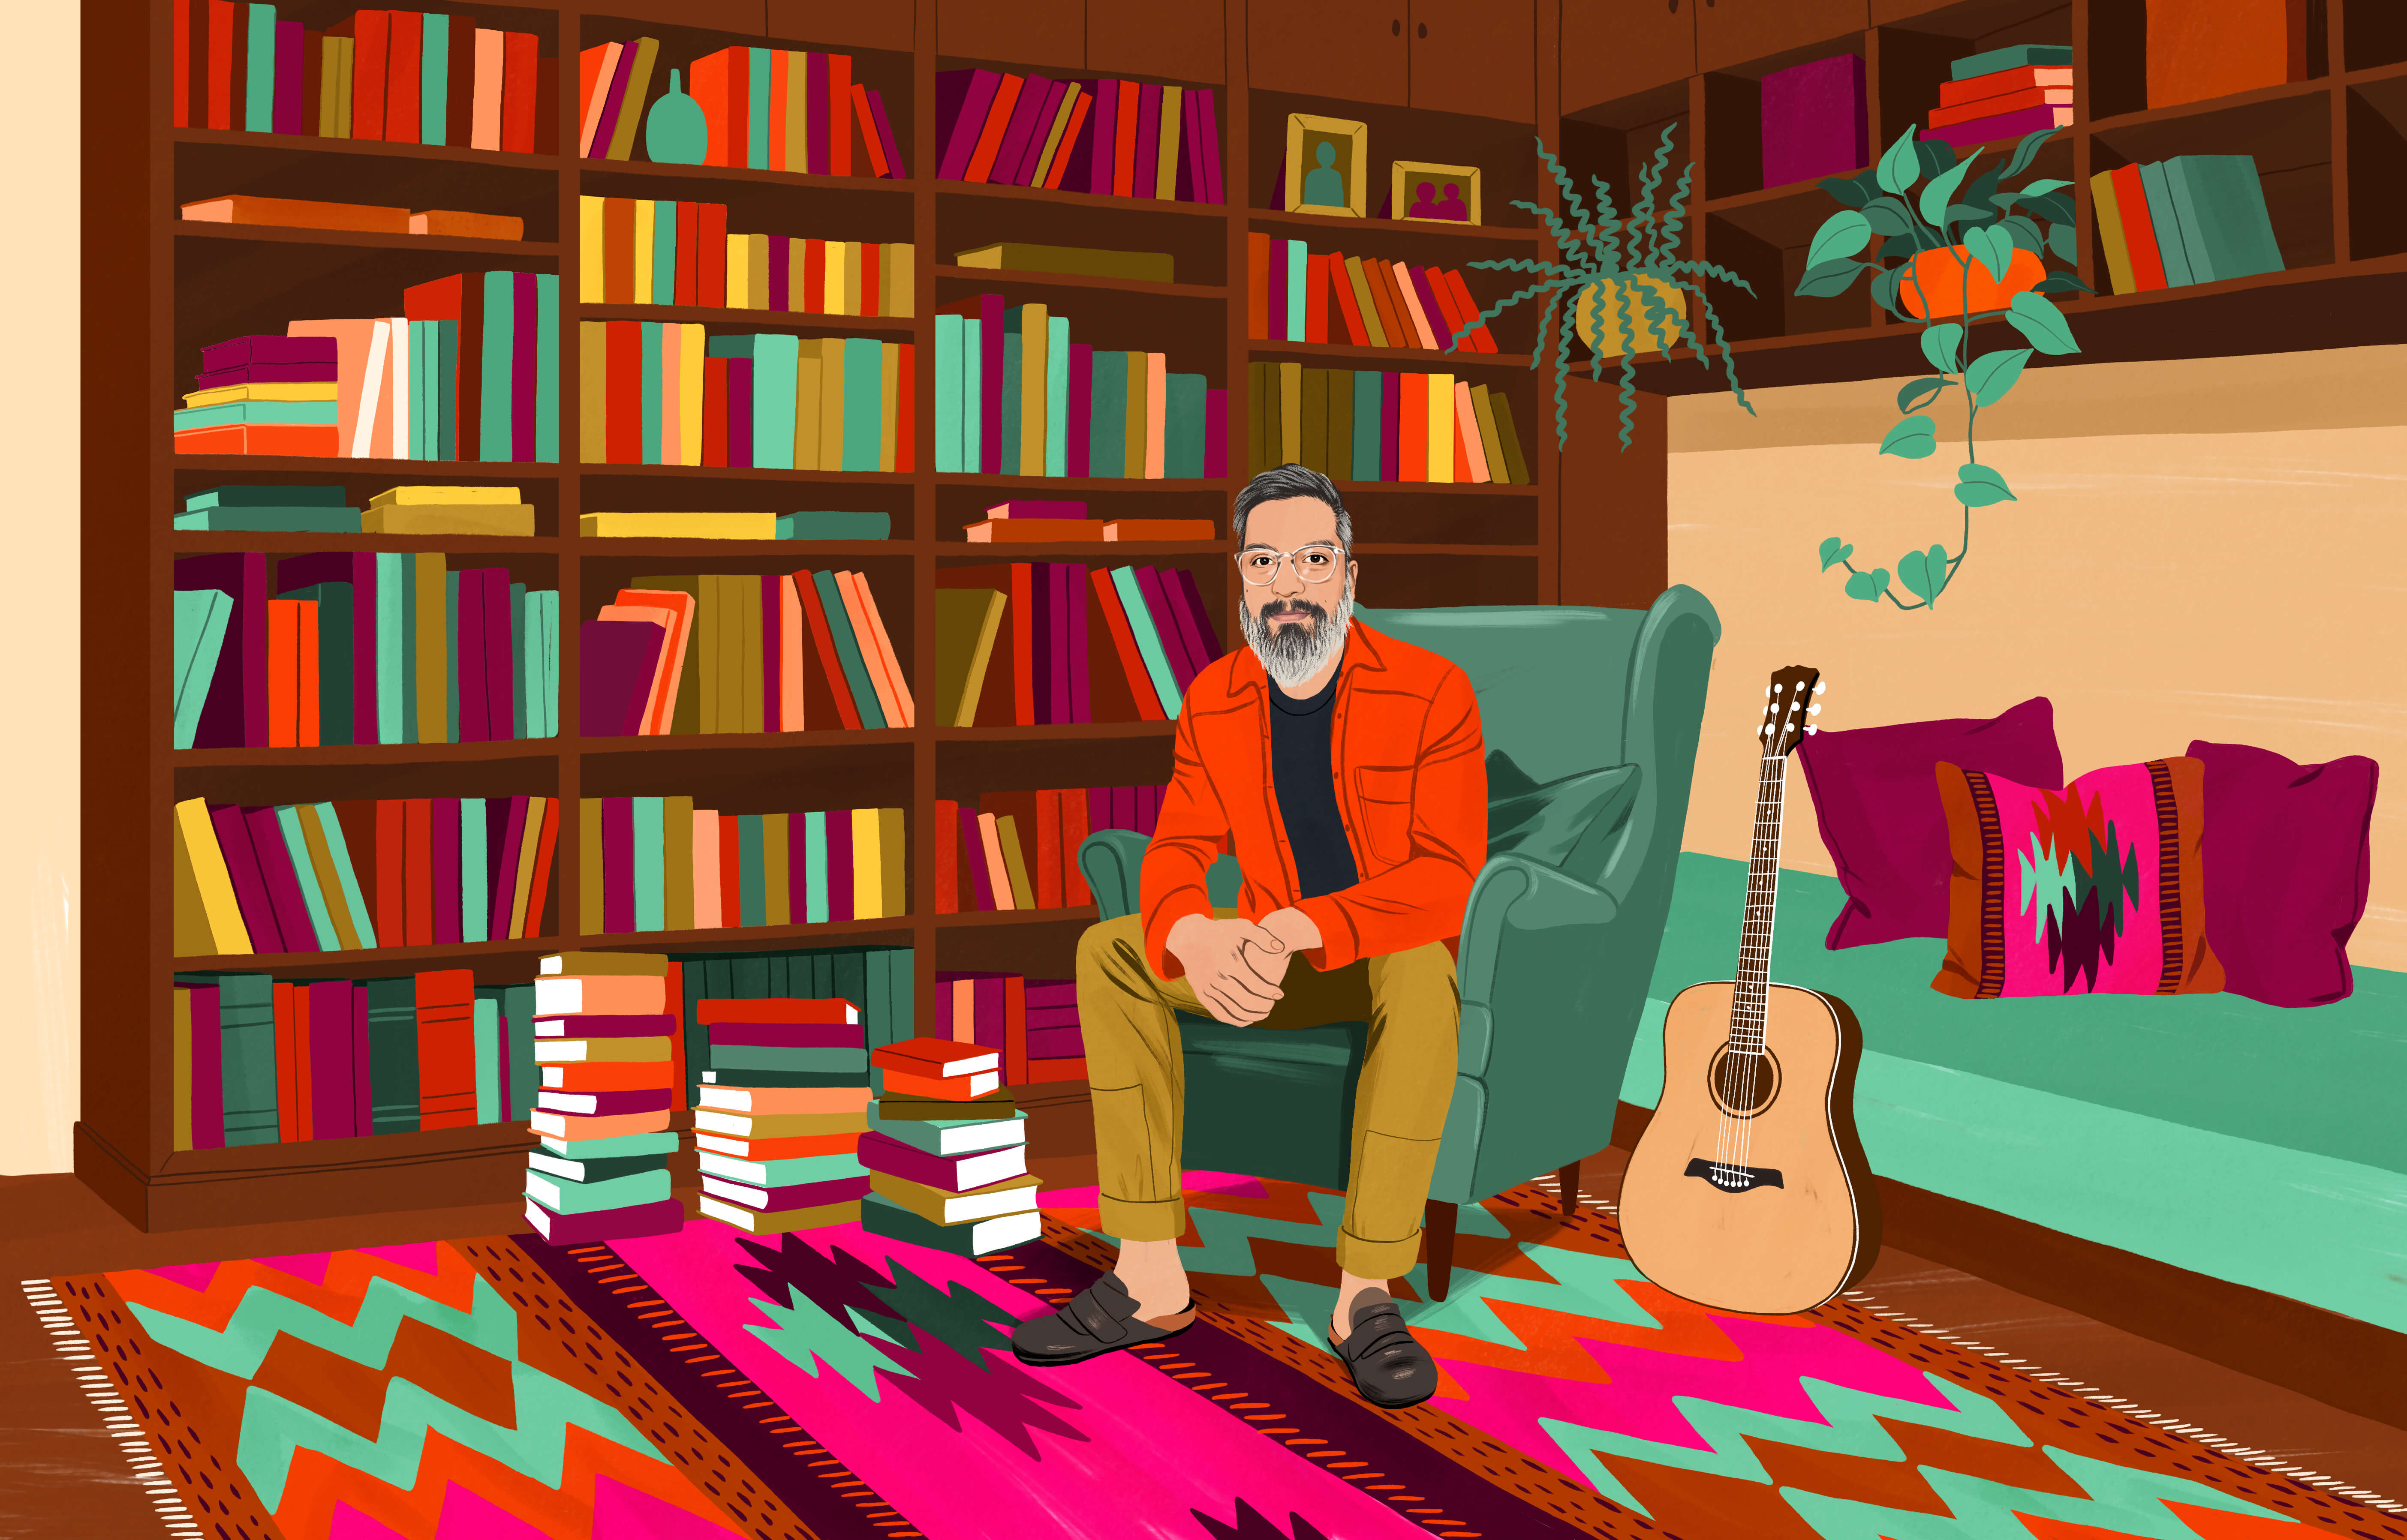 JP 坐在一張高背扶手椅上，周遭是有著大量書本的書櫃，地上也堆放著許多書本。地板上鋪著傳統的智利地毯，有著色彩繽紛的圖案。手邊還有一把木吉他。